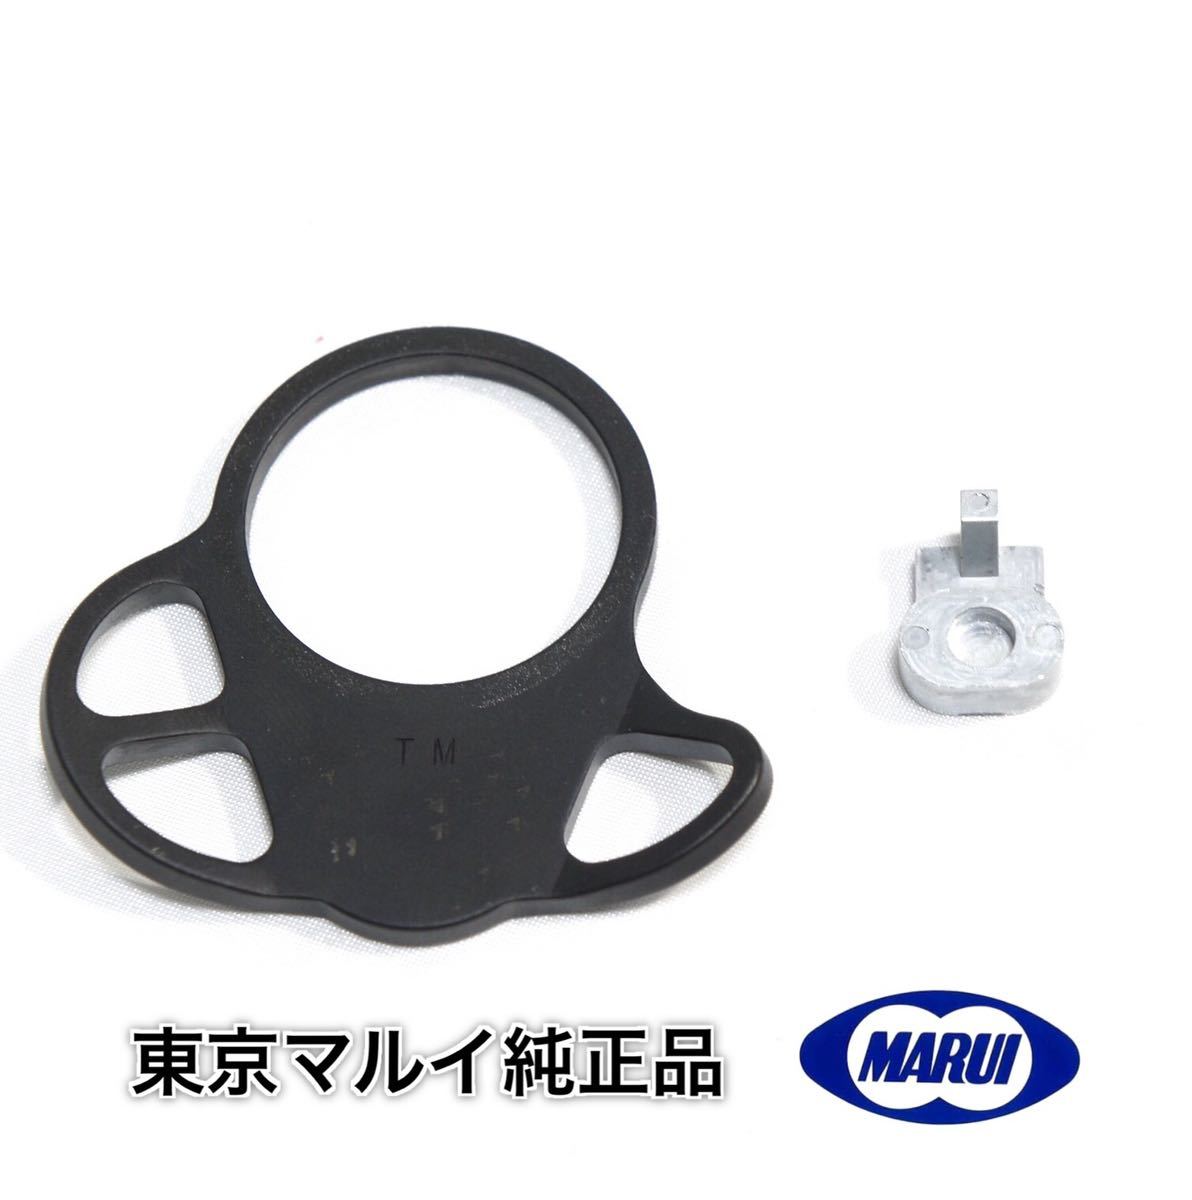 【新品-同梱可】CQBR BLOCK1 CQDタイプスリングセット 東京マルイ ガスブロ MWS ブロック1 M4 CQB-R スリングアダプターの画像1